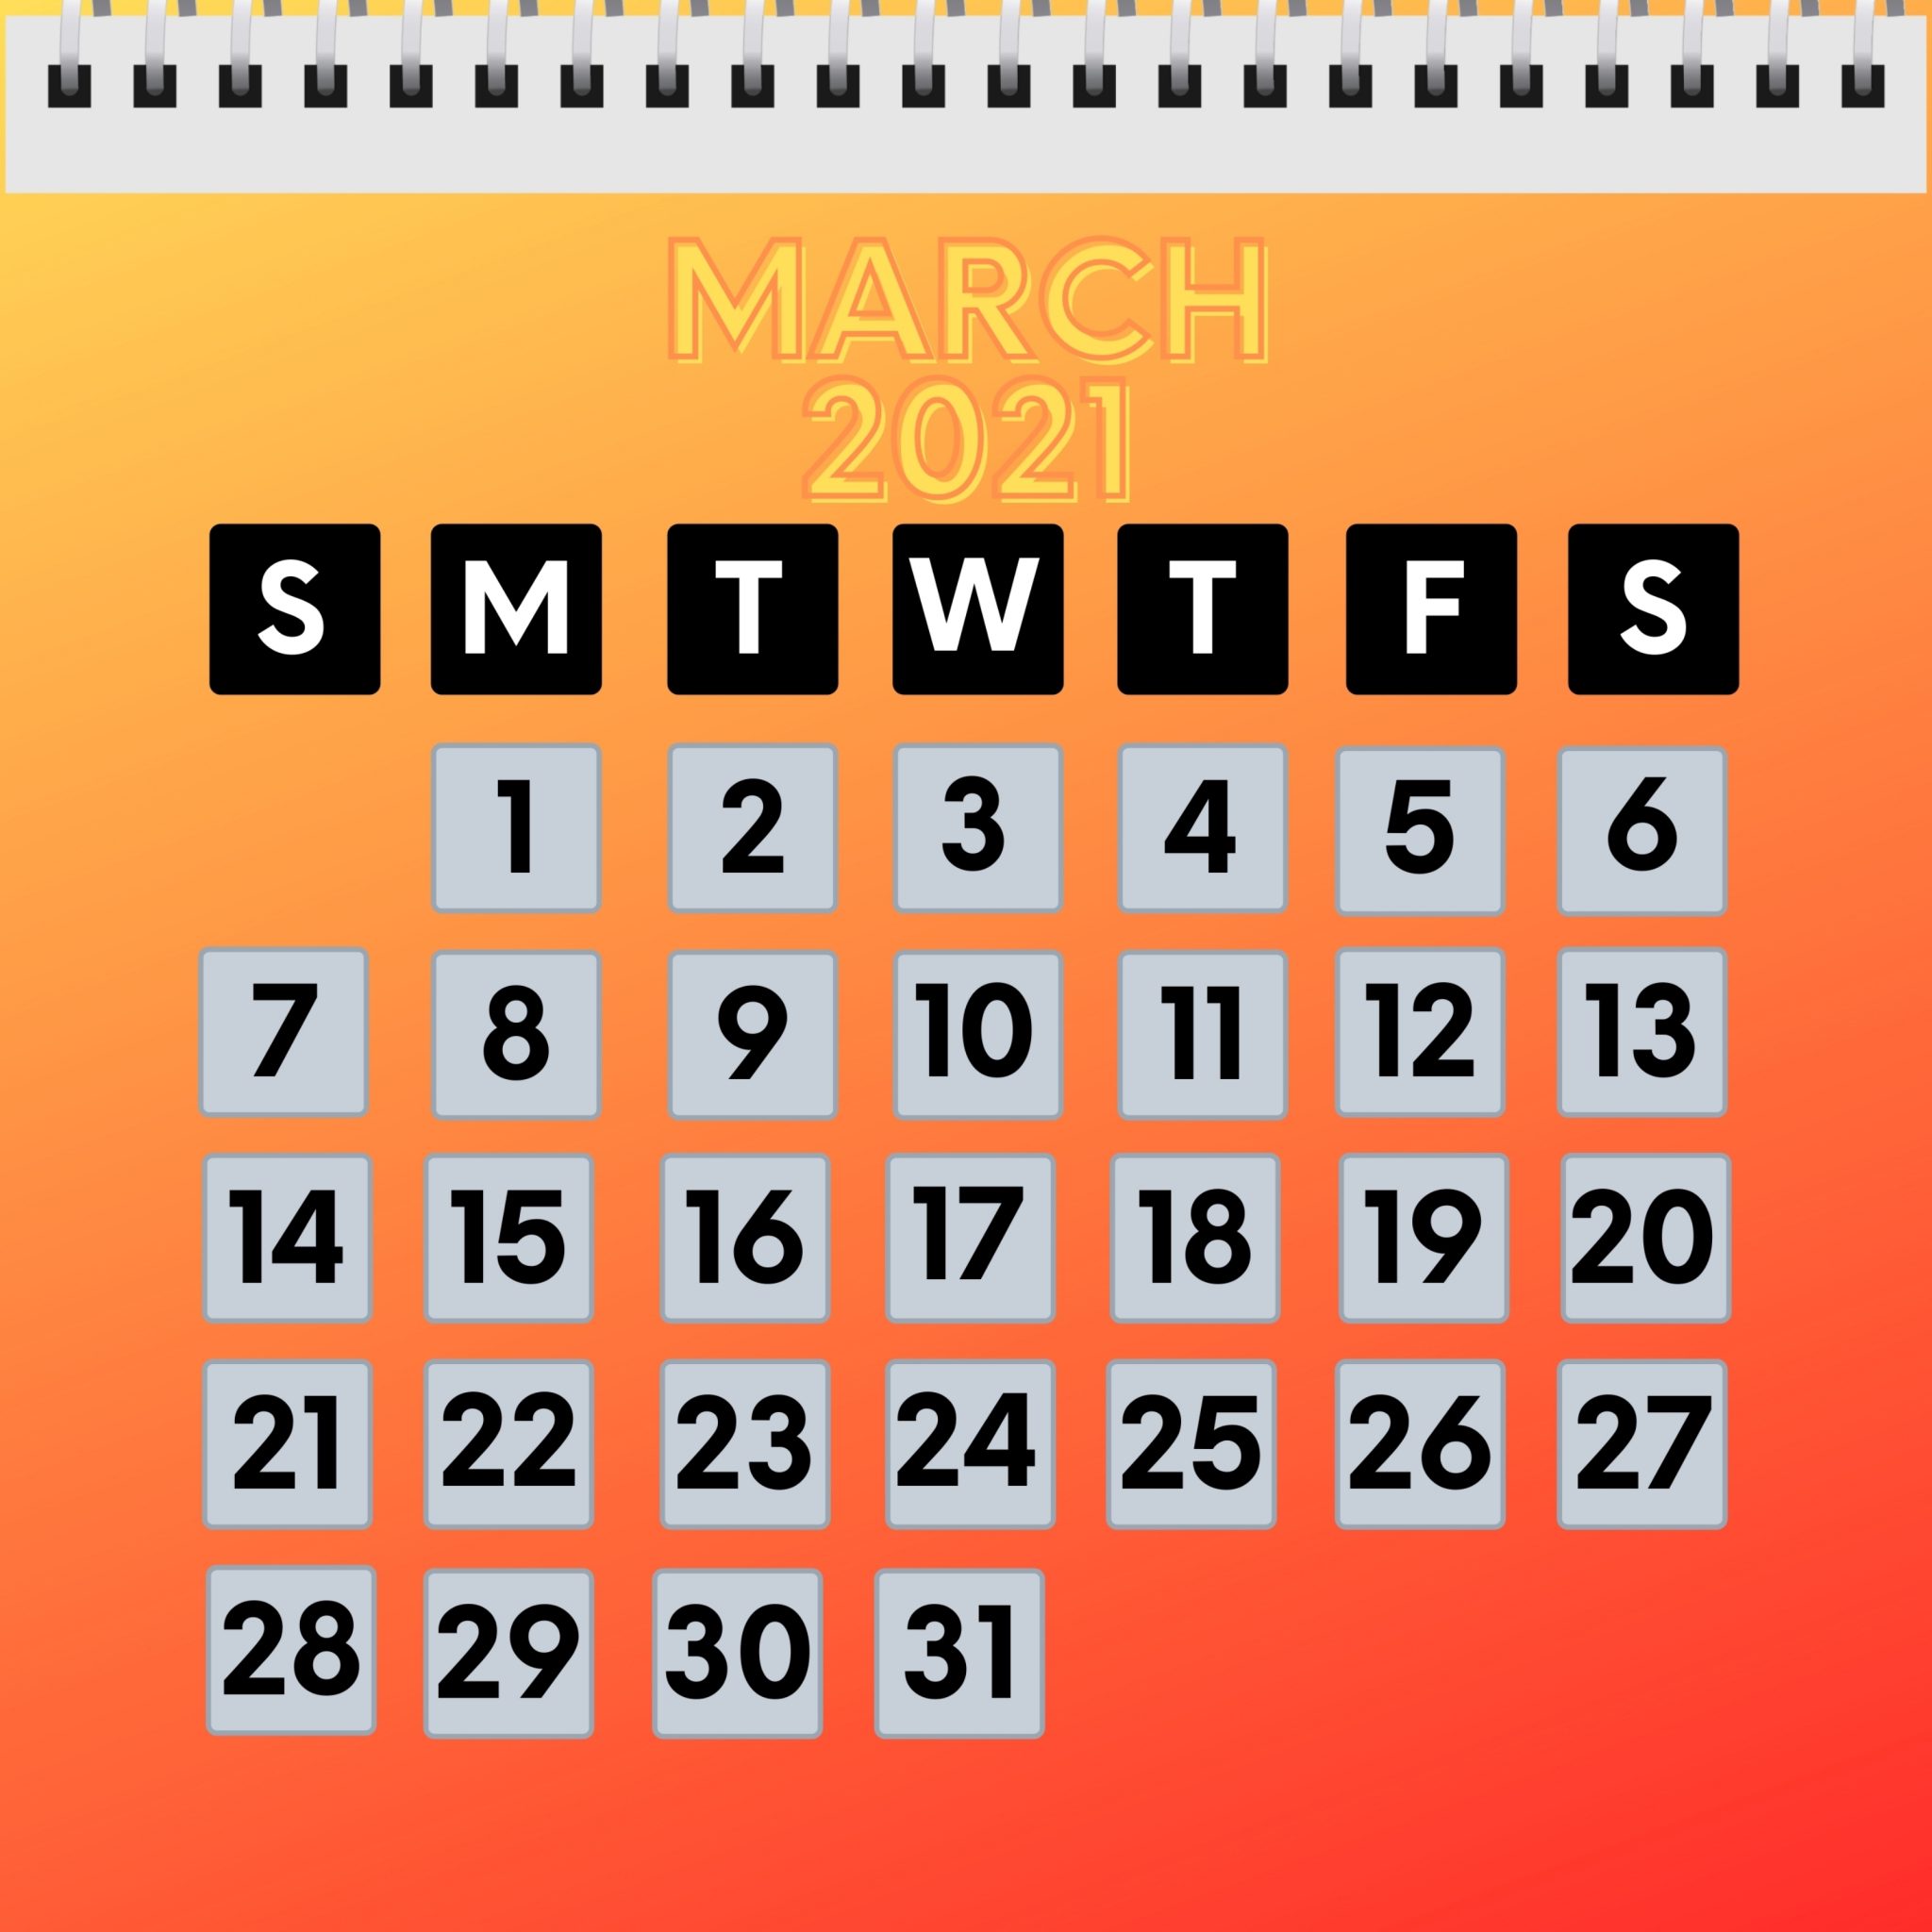 2048x2048 wallpapers iPad retina March 2021 Calendar iPad Wallpaper 2048x2048 pixels resolution